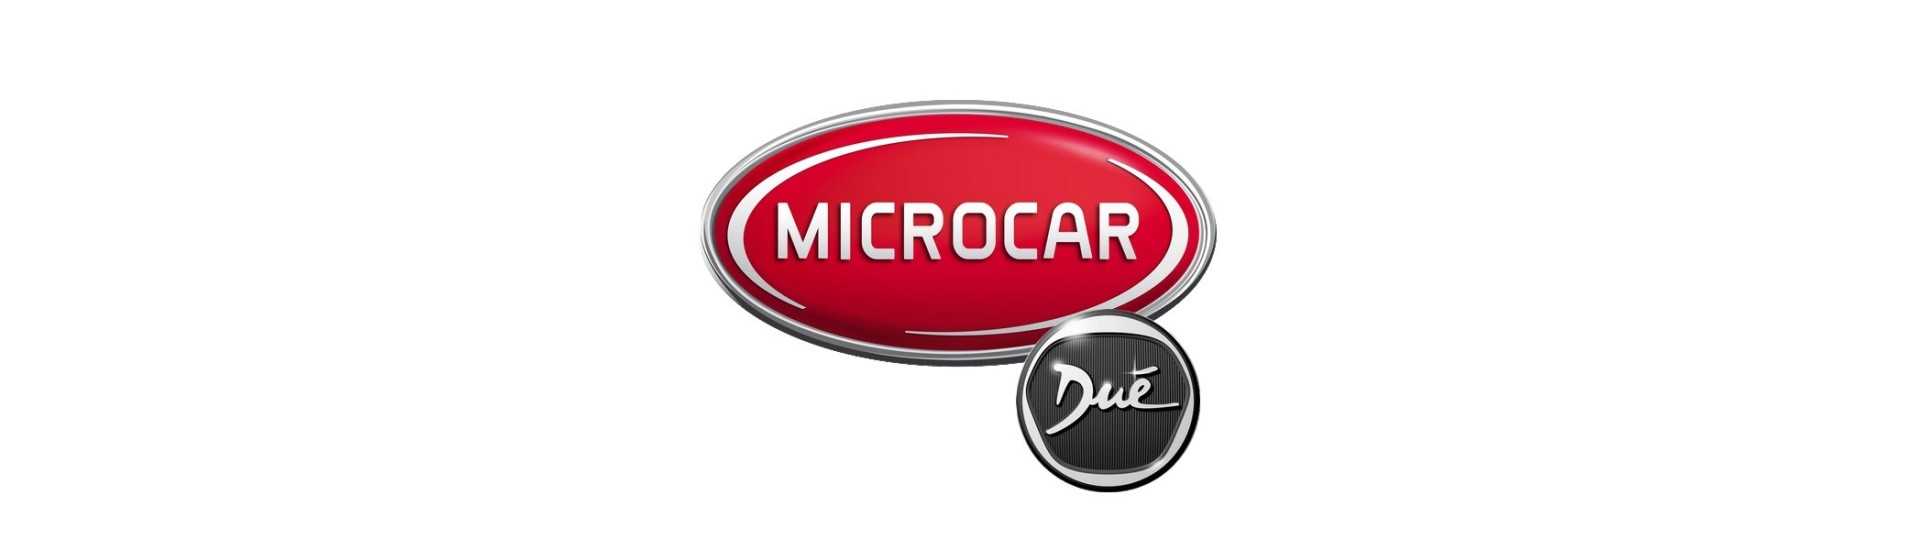 Acceleratorkabel till bästa pris utan tillstånd Microcar Dué